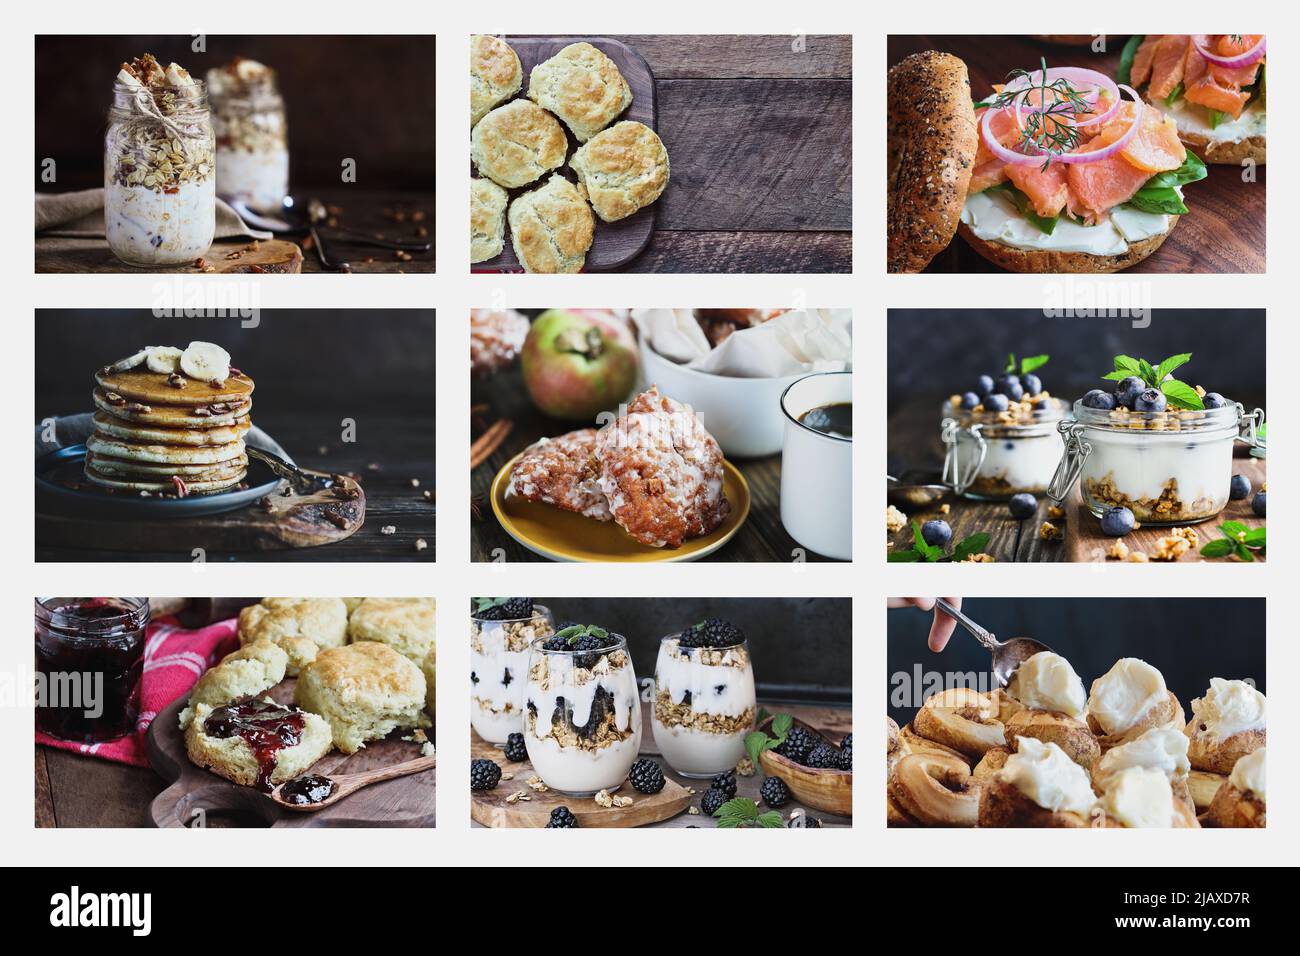 Collage de desayuno estilo americano de bajo nivel que incluye avena de noche, salmón ahumado, galletas sureñas, tortitas, parfaits, fritters de manzana y rollos de canela. Foto de stock